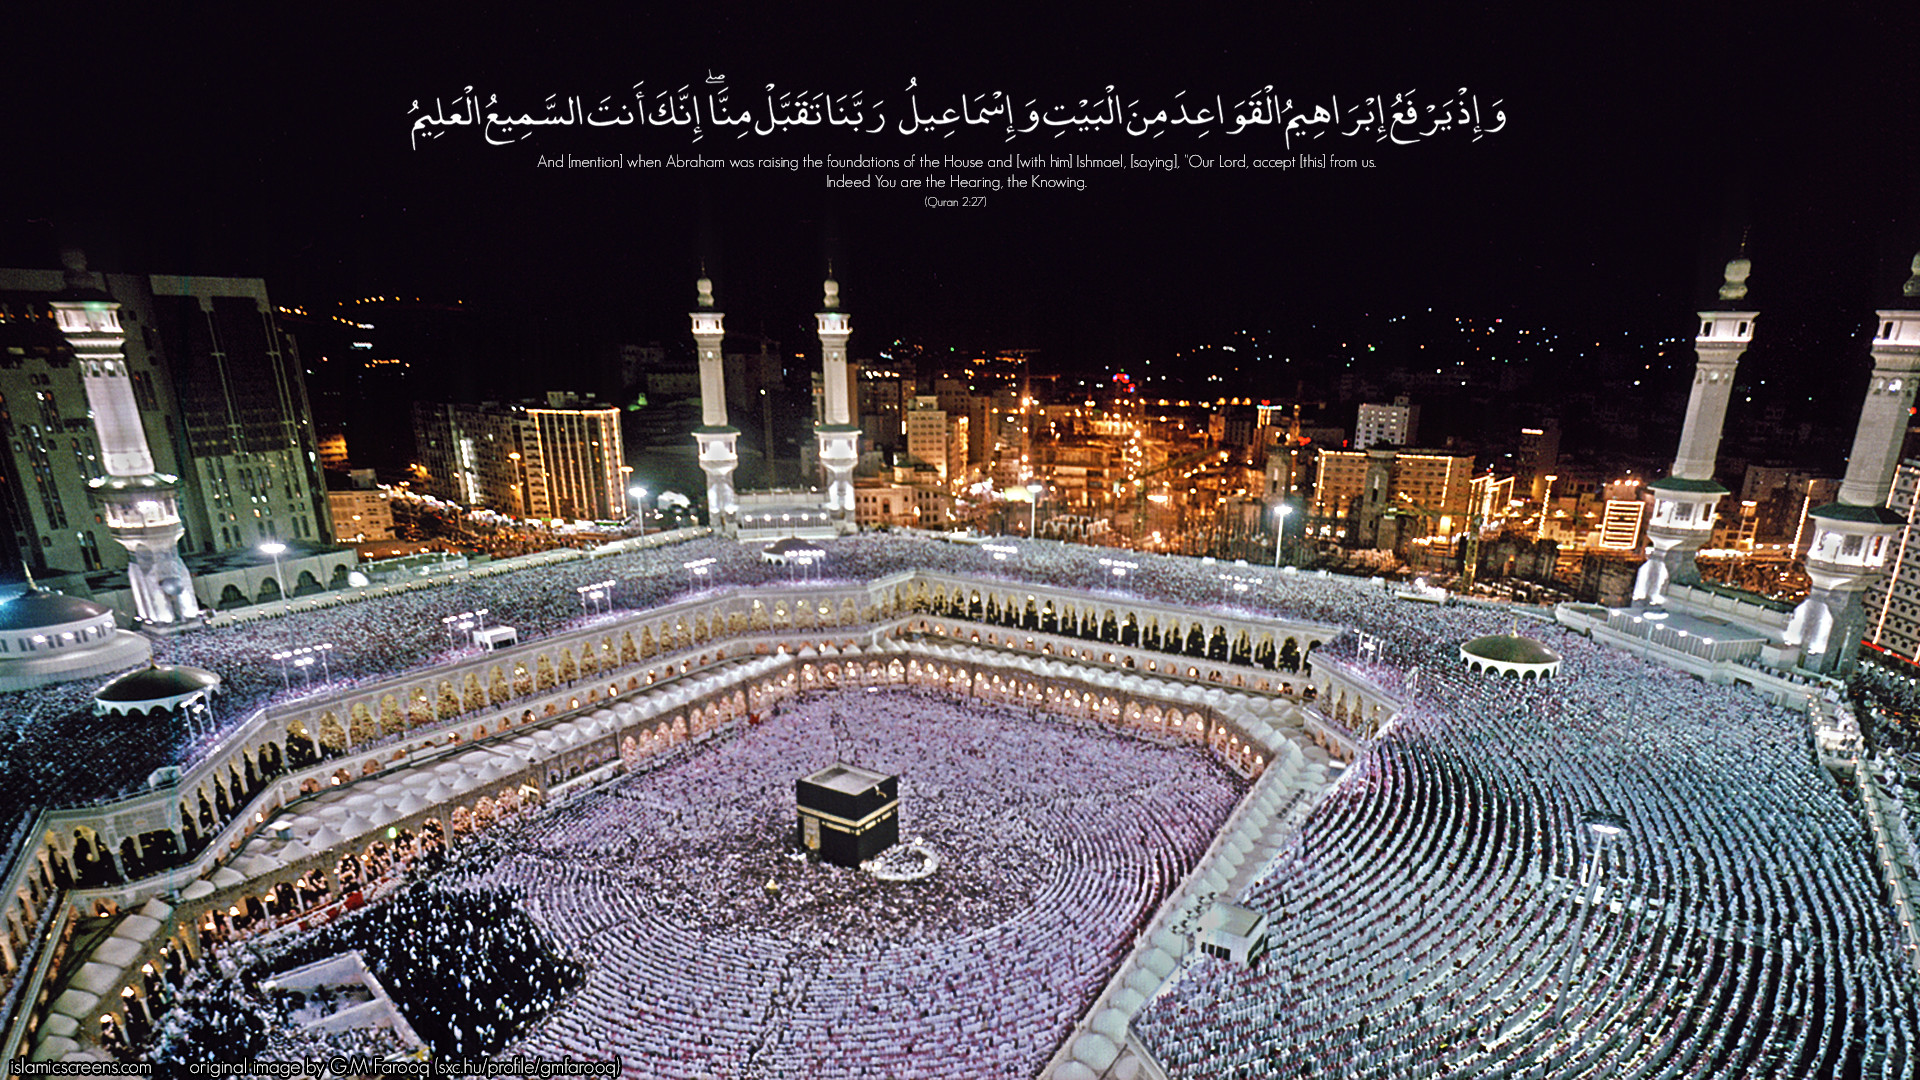 hajj, worship of muslims background images